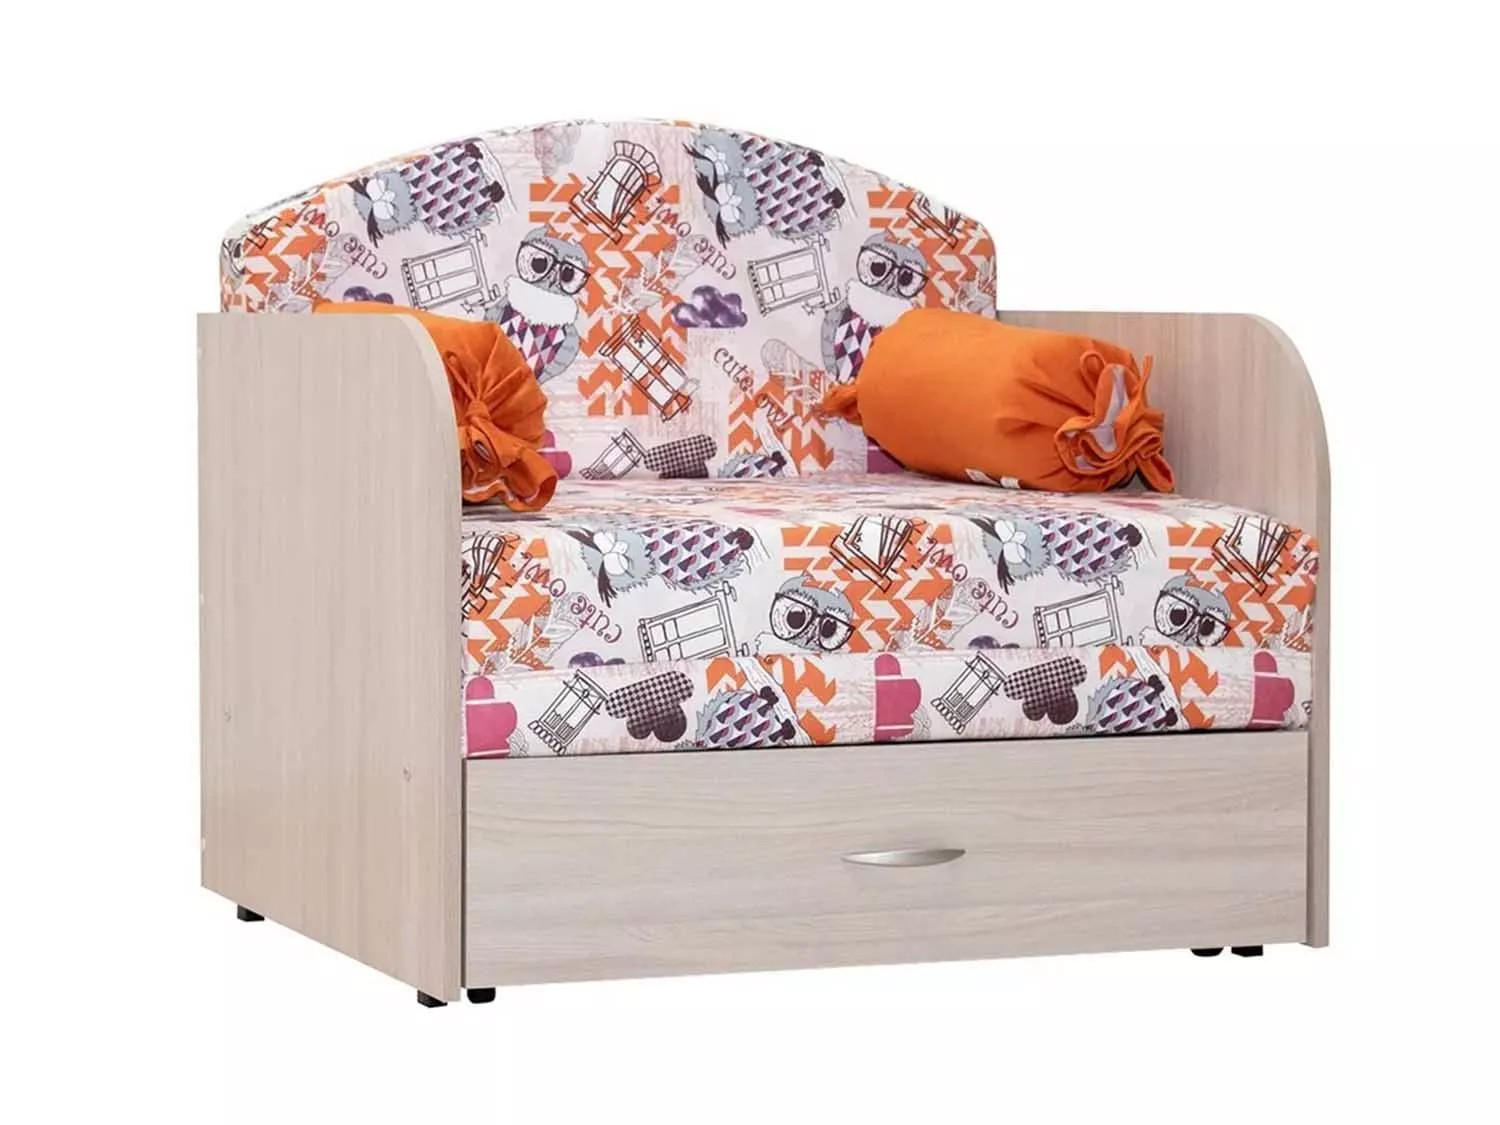 Кресло-кровать Антошка (85)